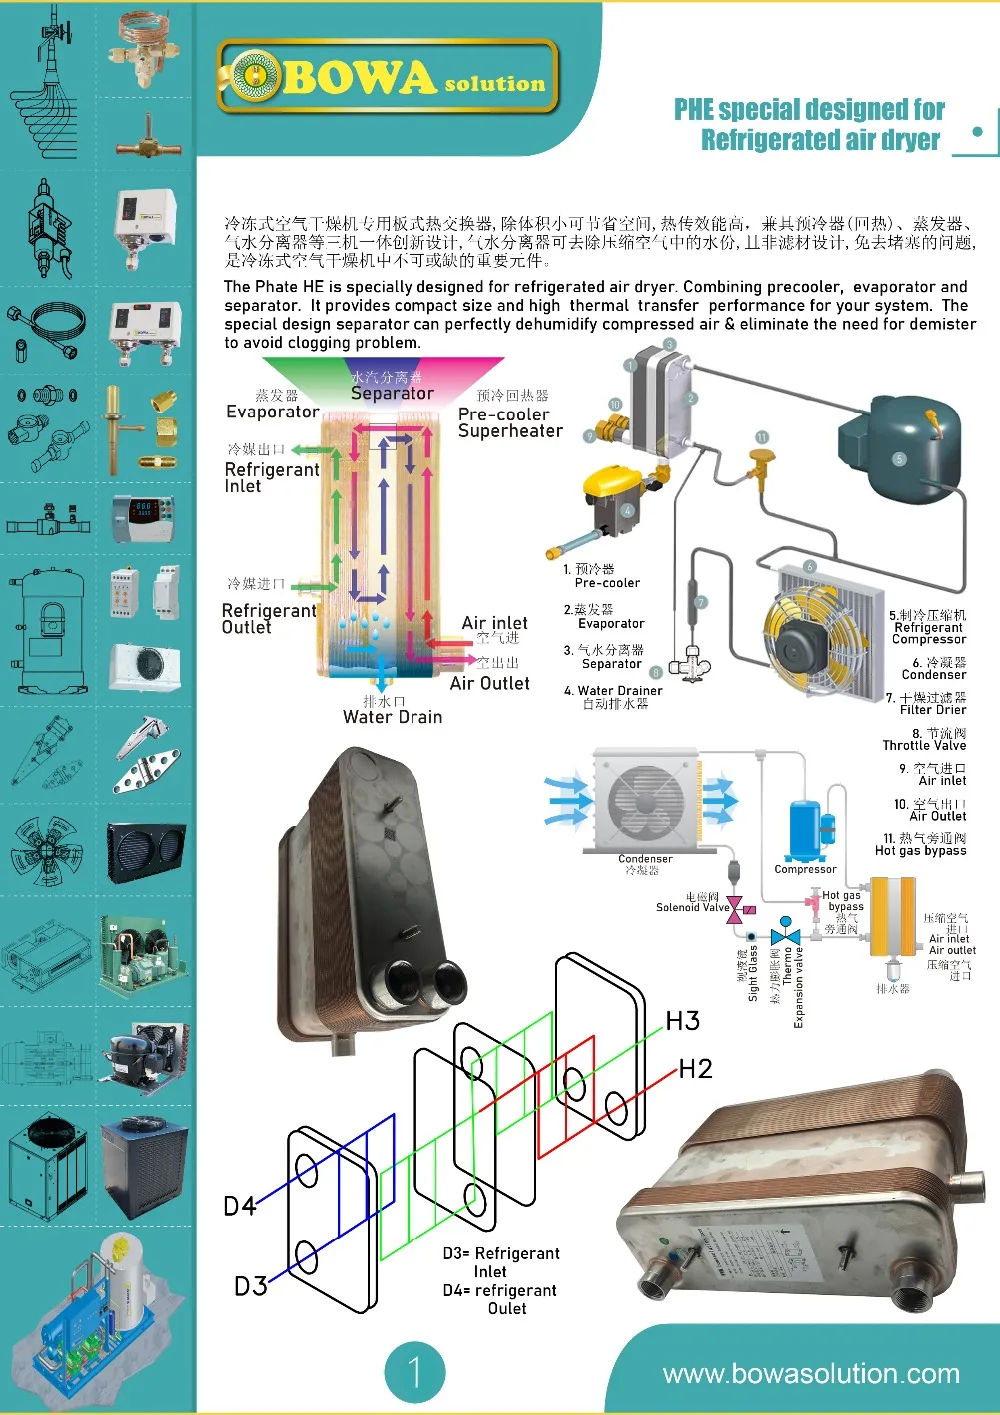 0.83Nm3/мин 3-в-1 осушитель для испарителя-отличный выбор для портативный рефрижератор осушитель воздуха как компактные размеры и светильник вес